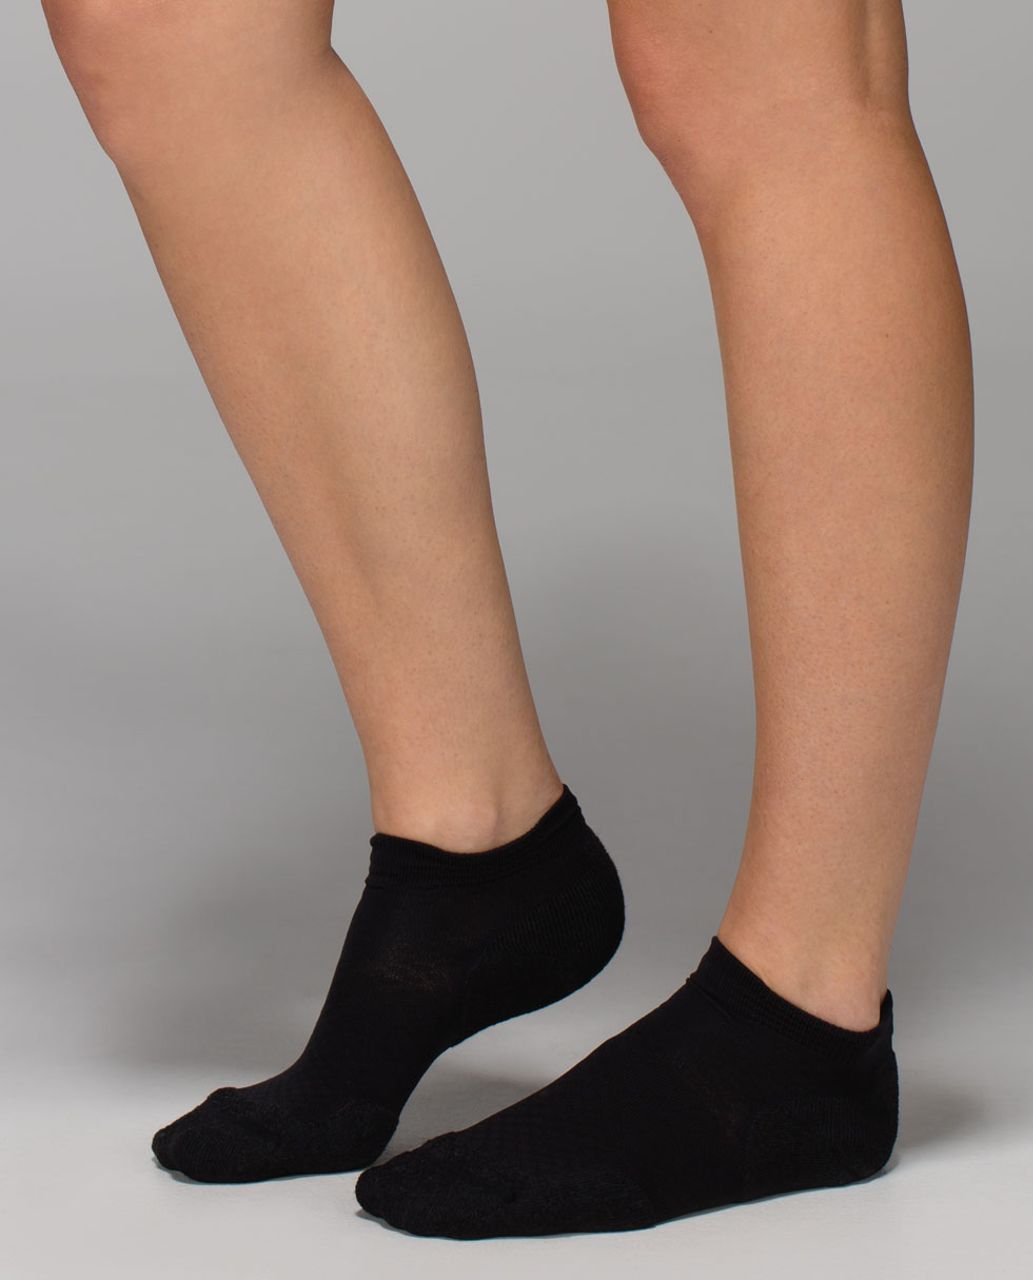 Lululemon Women's Ultimate Padded Run Sock - Checker Black (First Release)